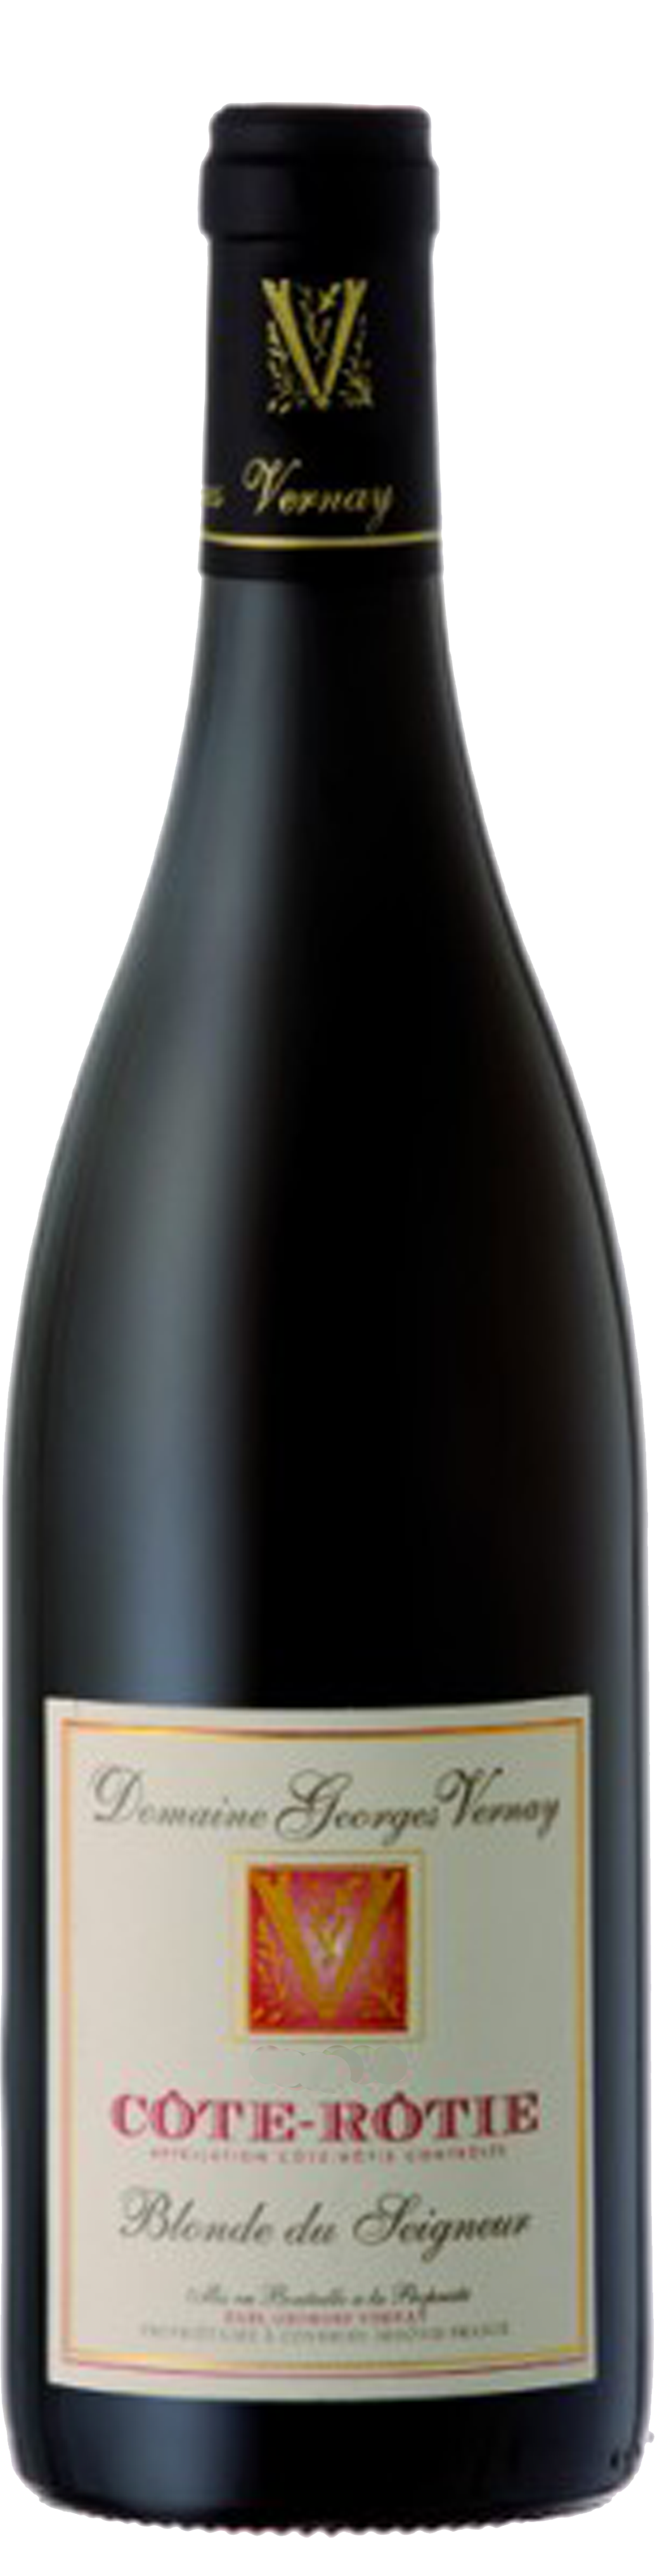 Bottle shot of 2012 Côte-Rôtie La Blonde du Seigneur